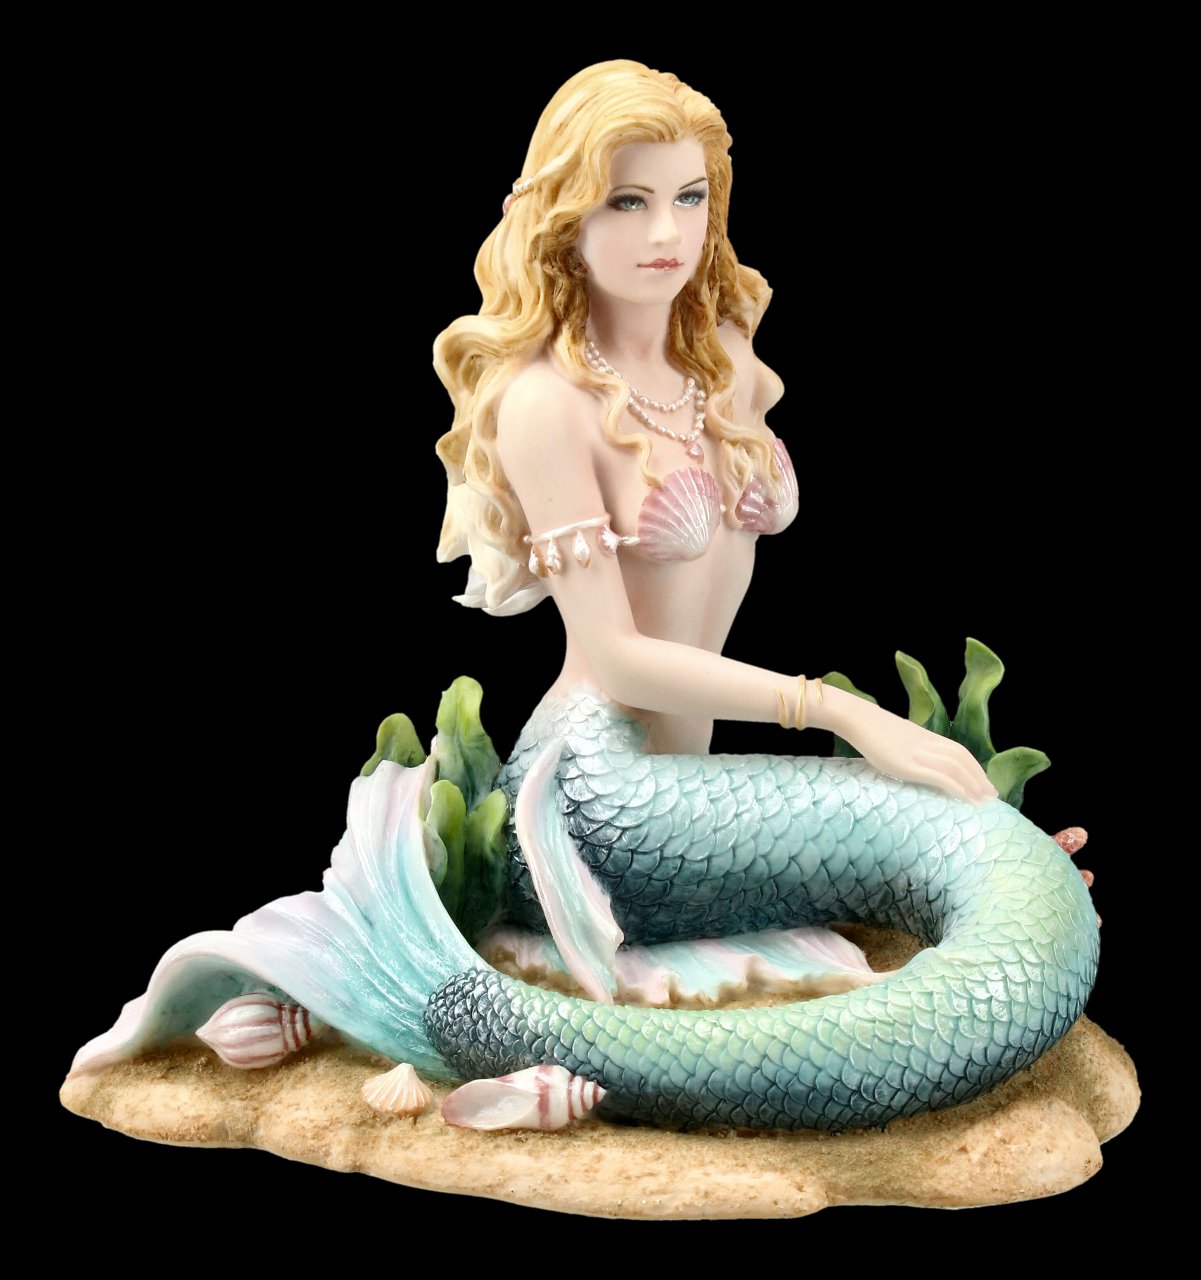 Mermaid Figurine sits on Seabed